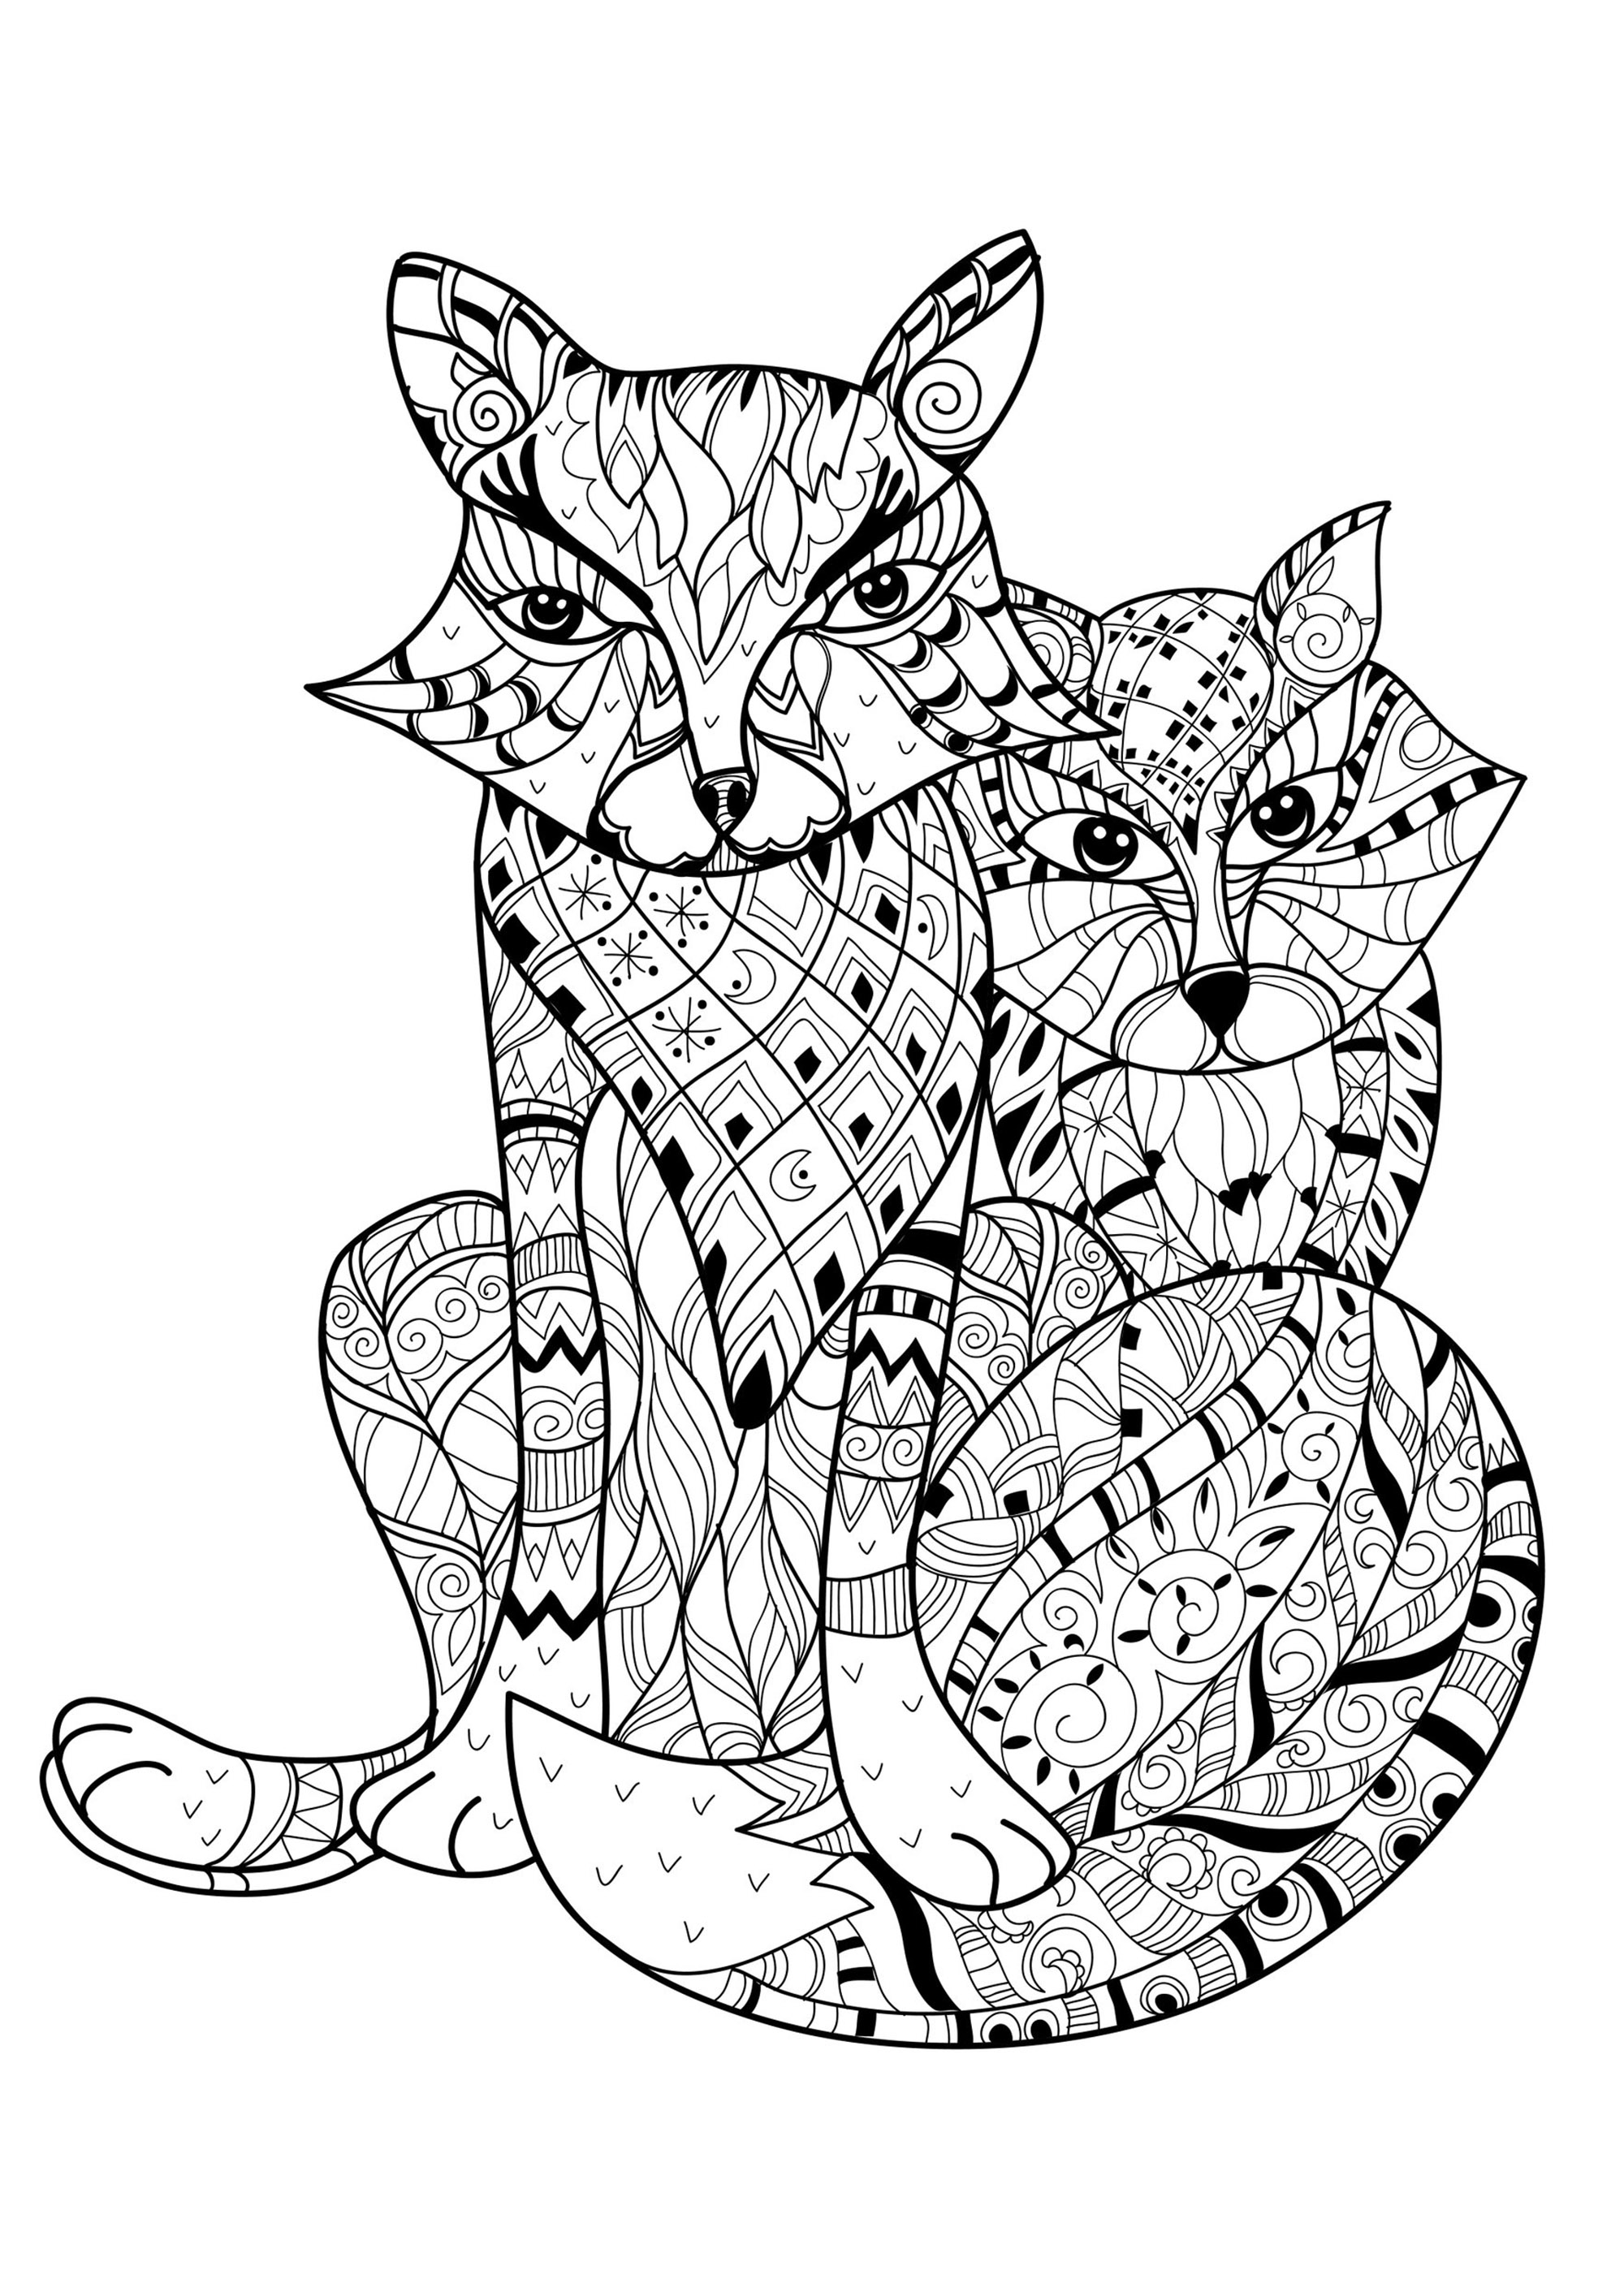 Deux jolis renards à colorier avec leurs motifs simples et harmonieux, Artiste : Yazzik   Source : 123rf